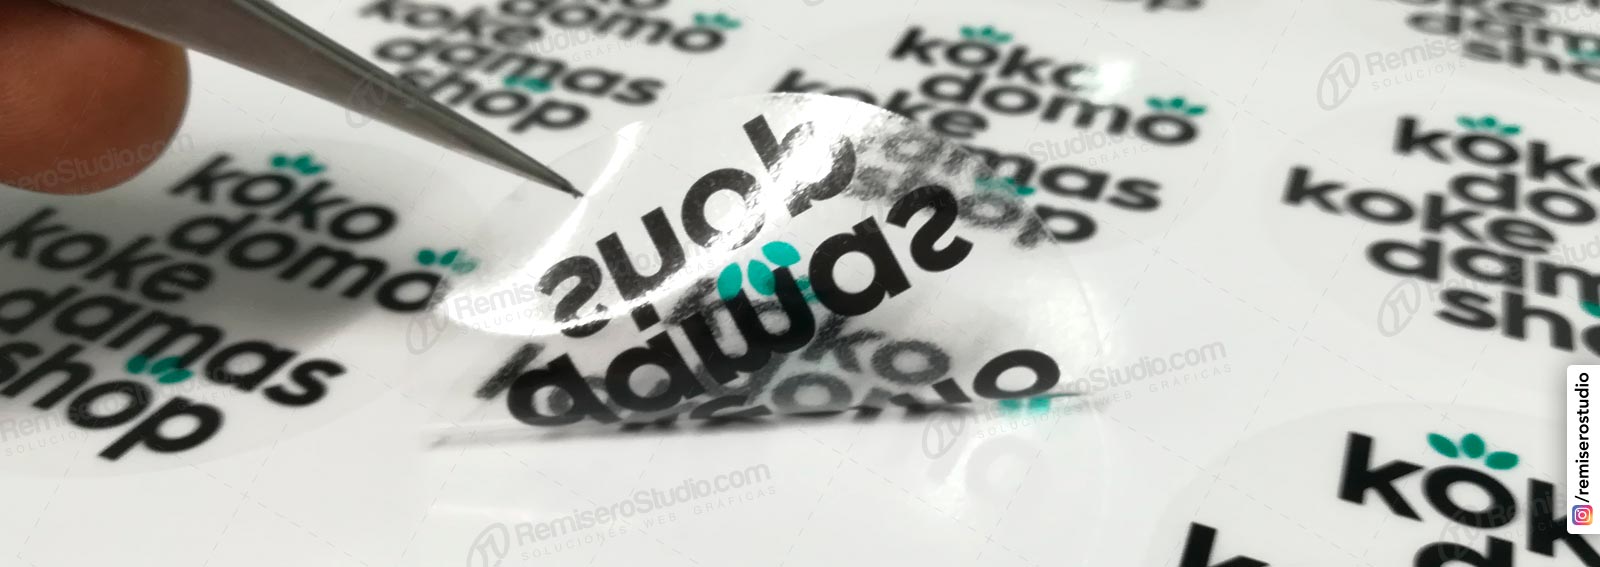 Etiquetas Adhesivas: Impresión de stickers adhesivos en Lima Perú | Online | RemiseroStudio.com